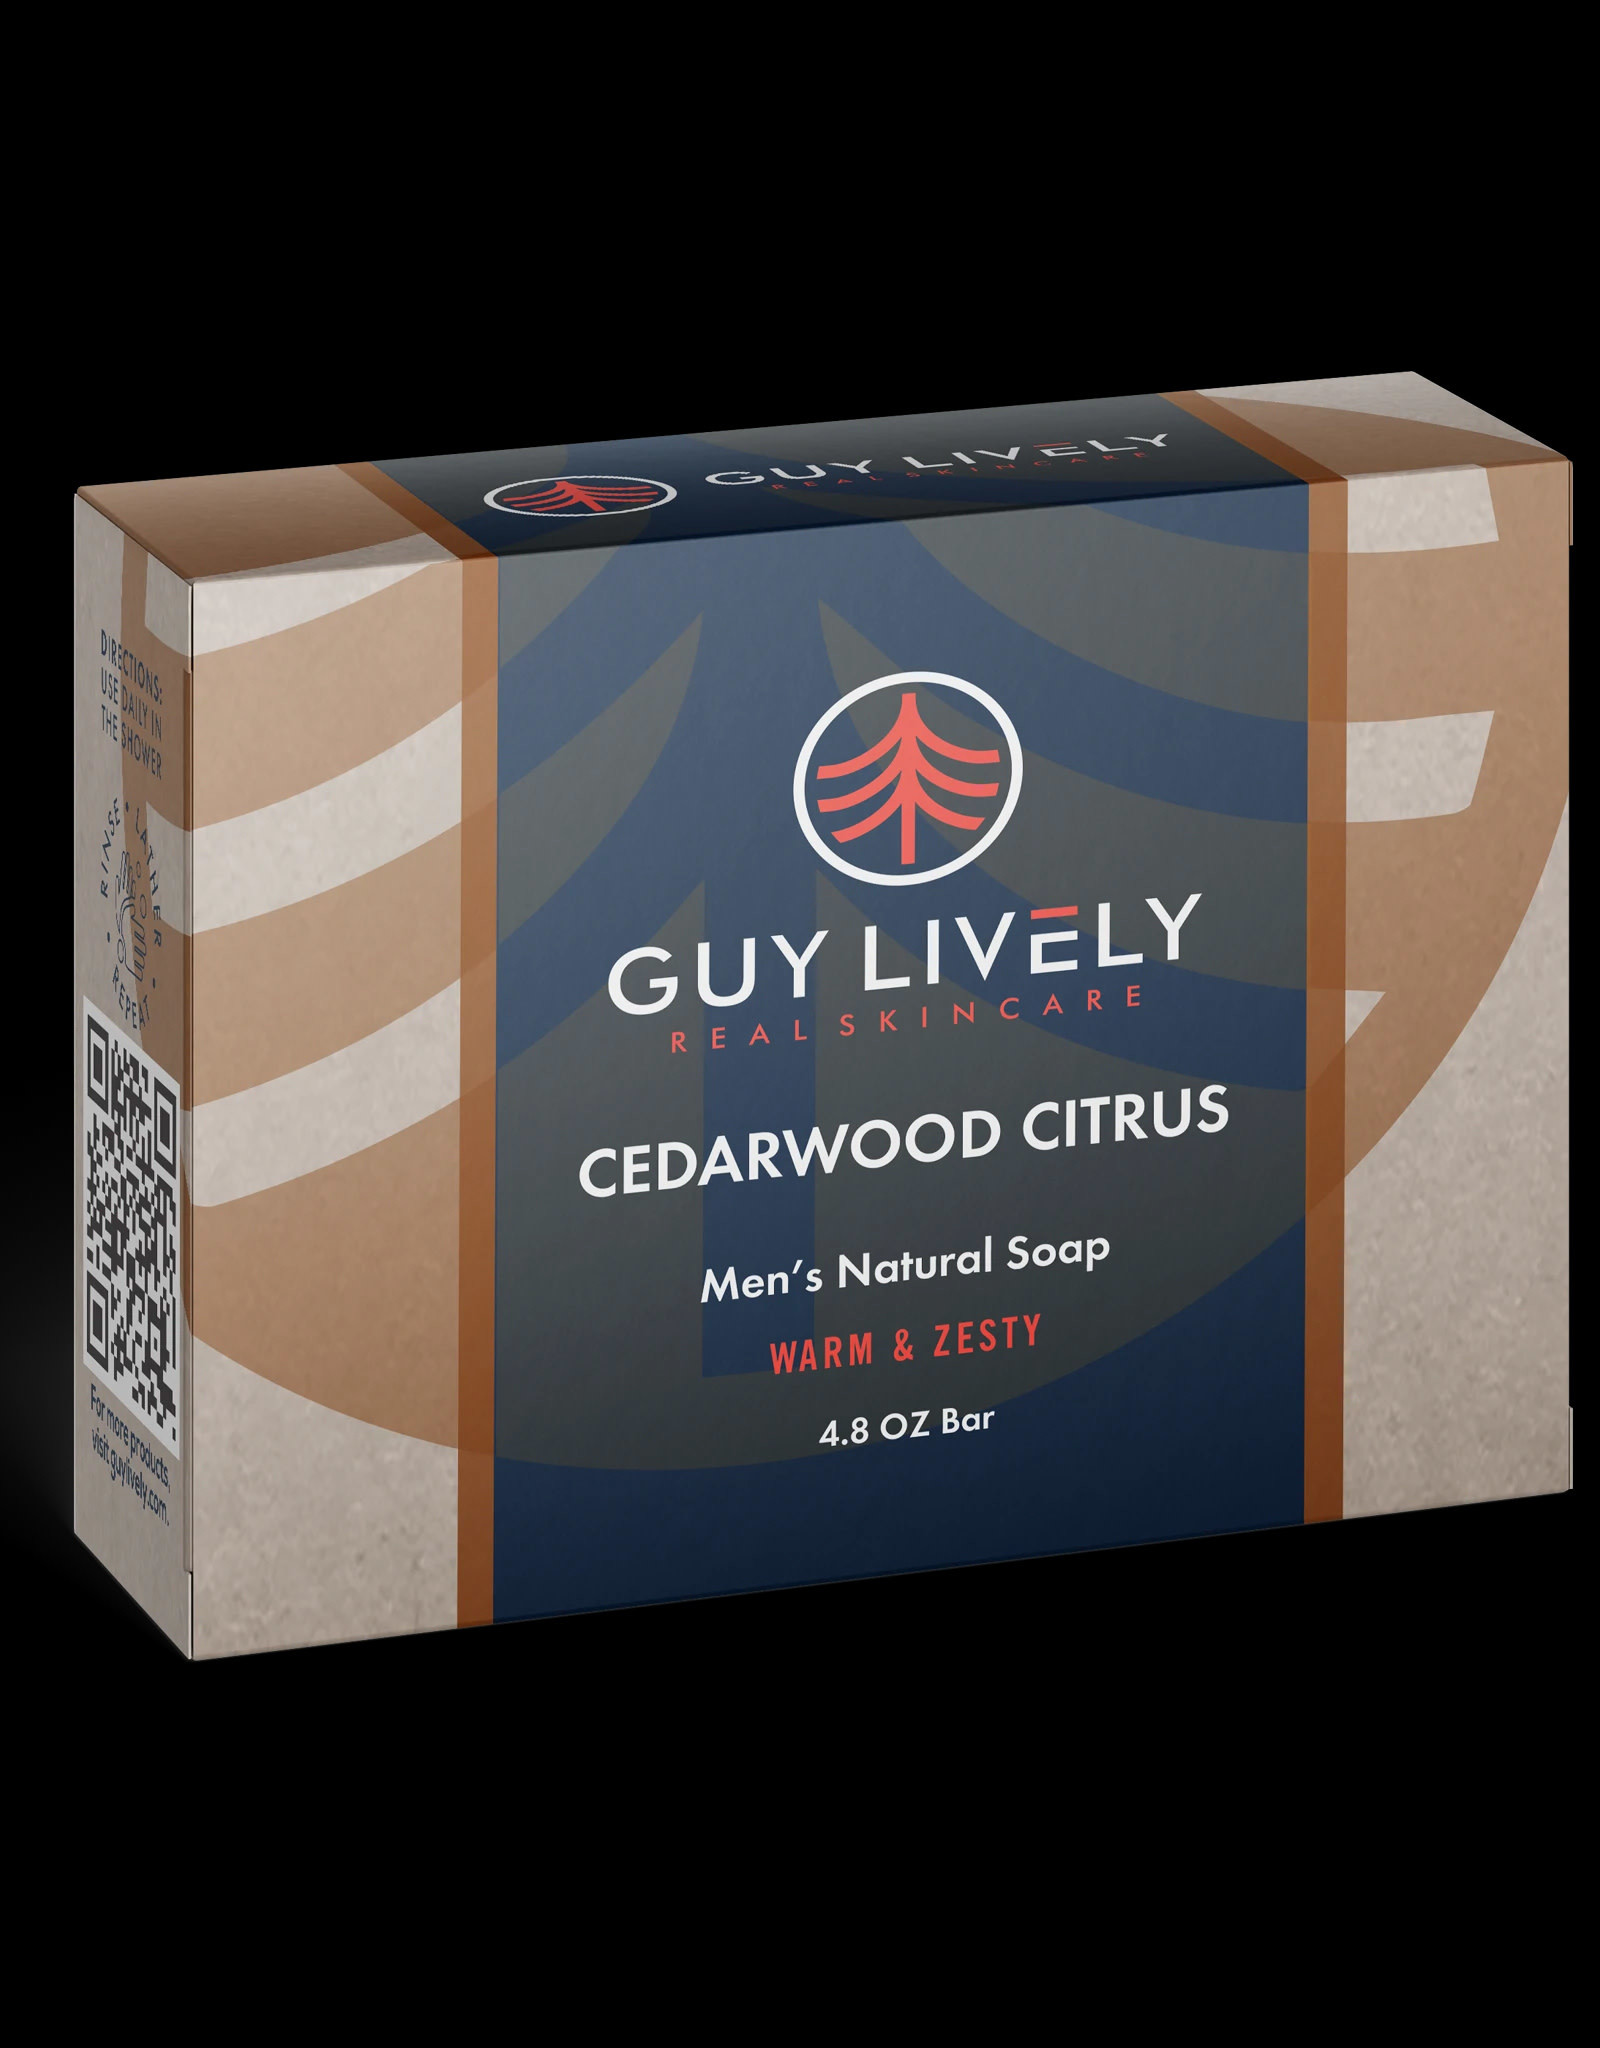 Men's Natural Soap Cedarwood Citrus